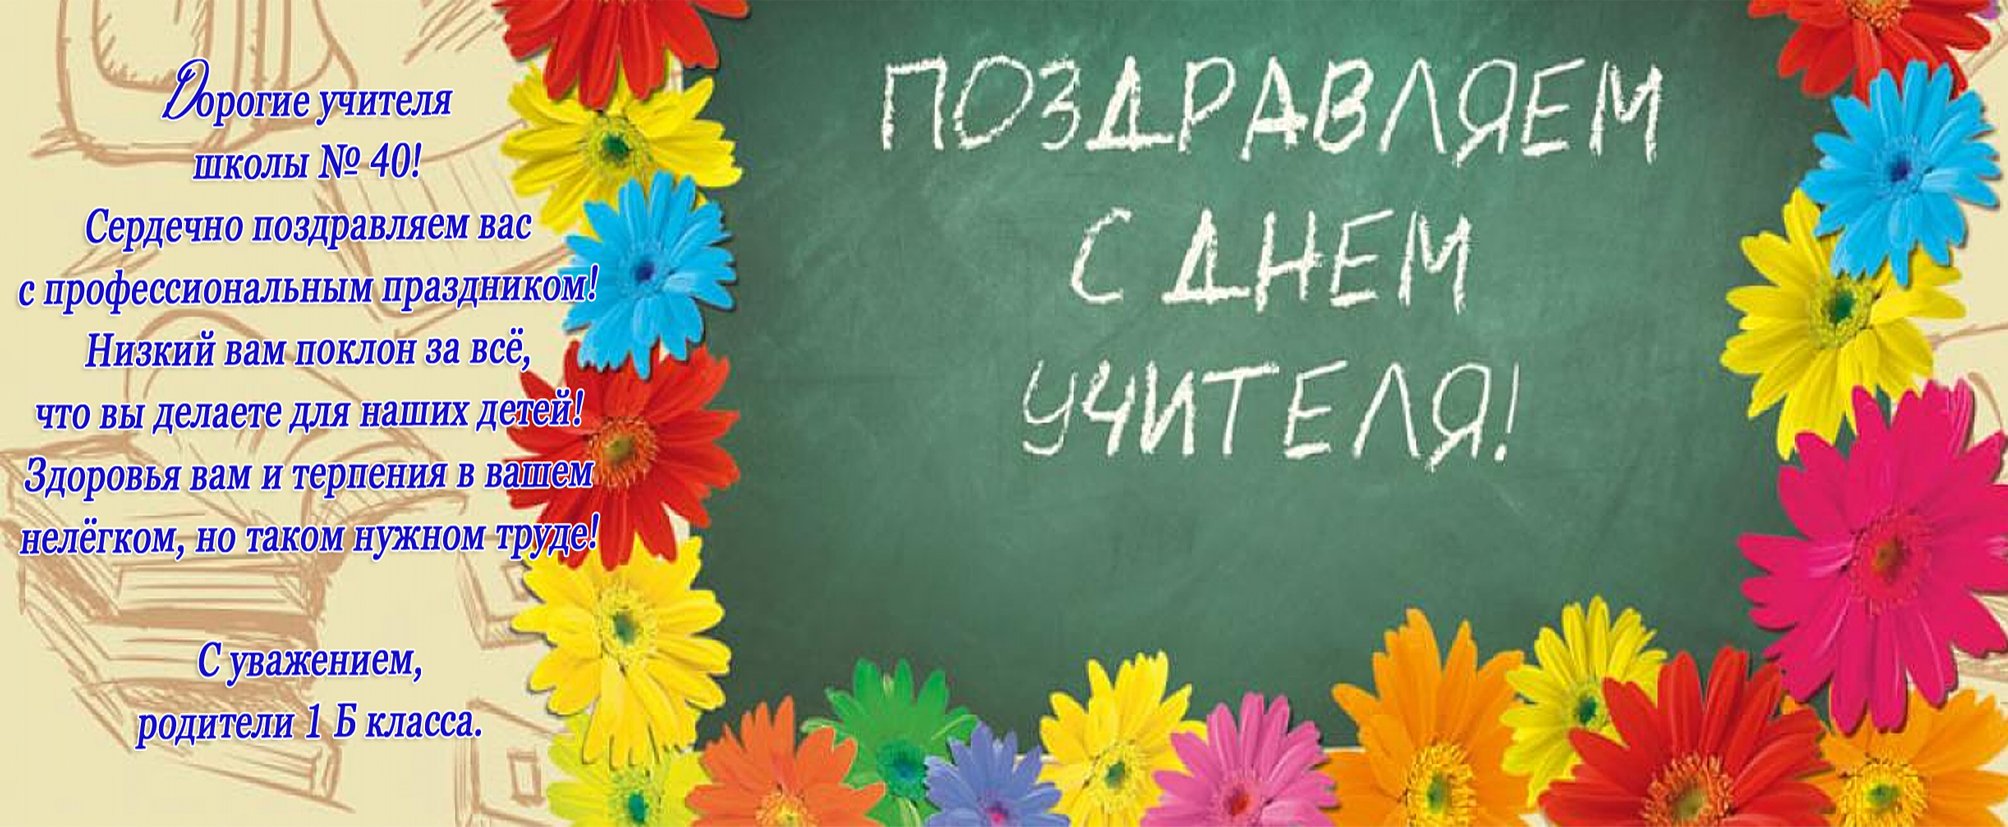 С днем учителя на украинском языке картинки. С днём учителя поздравления на украинском языке. Баннер учителя английского. Поздравление с 23 учителю.